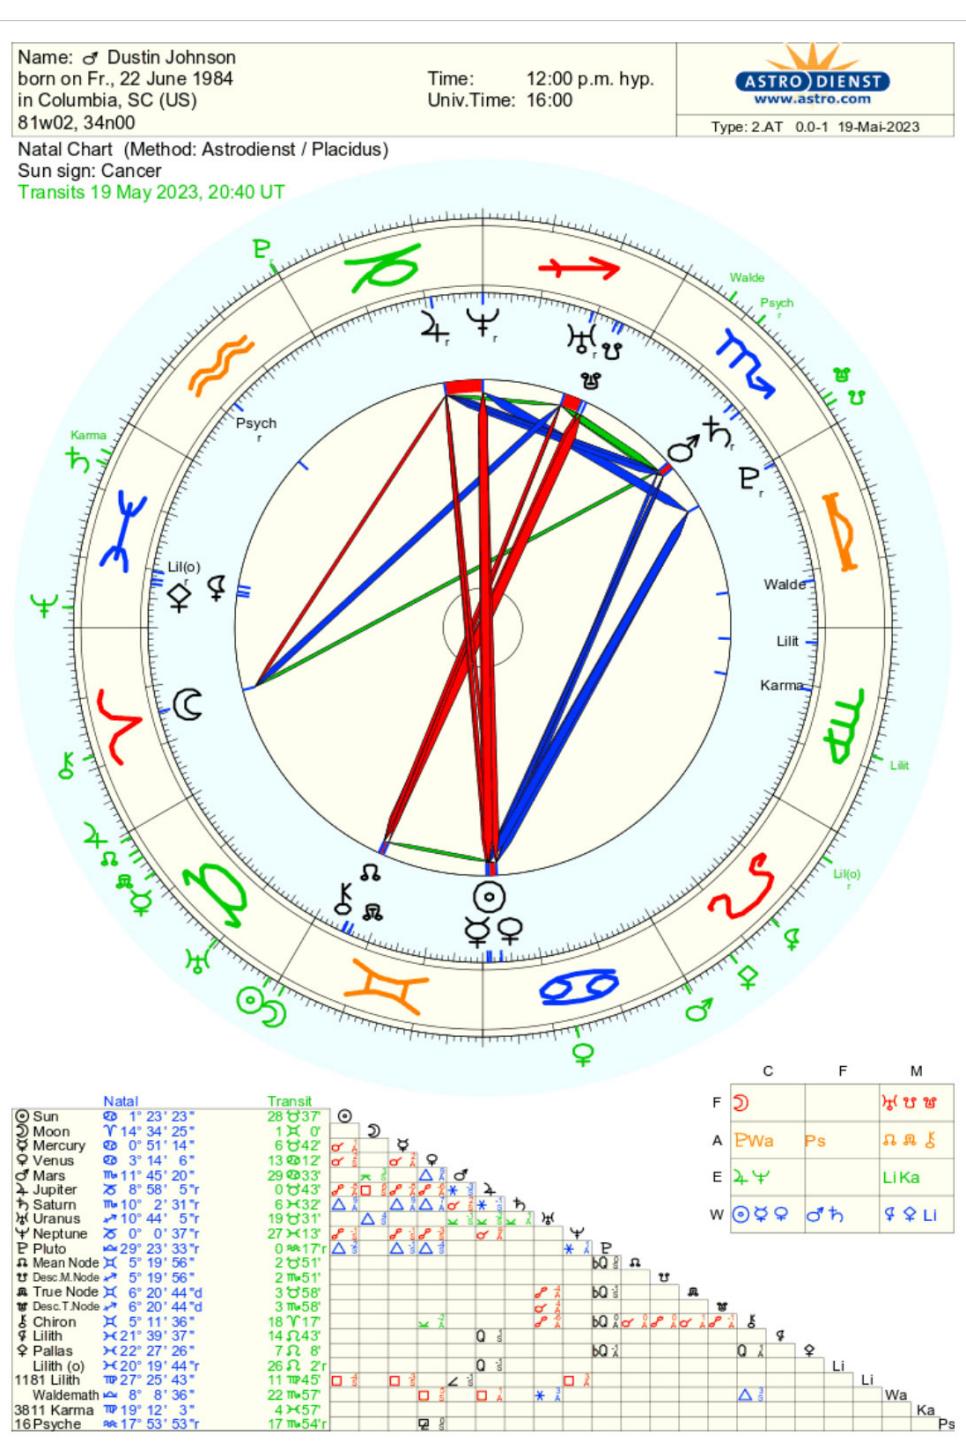 /content/dam/images/golfdigest/fullset/2023/5/Dustin-Johnson-astrological-chart.jpg